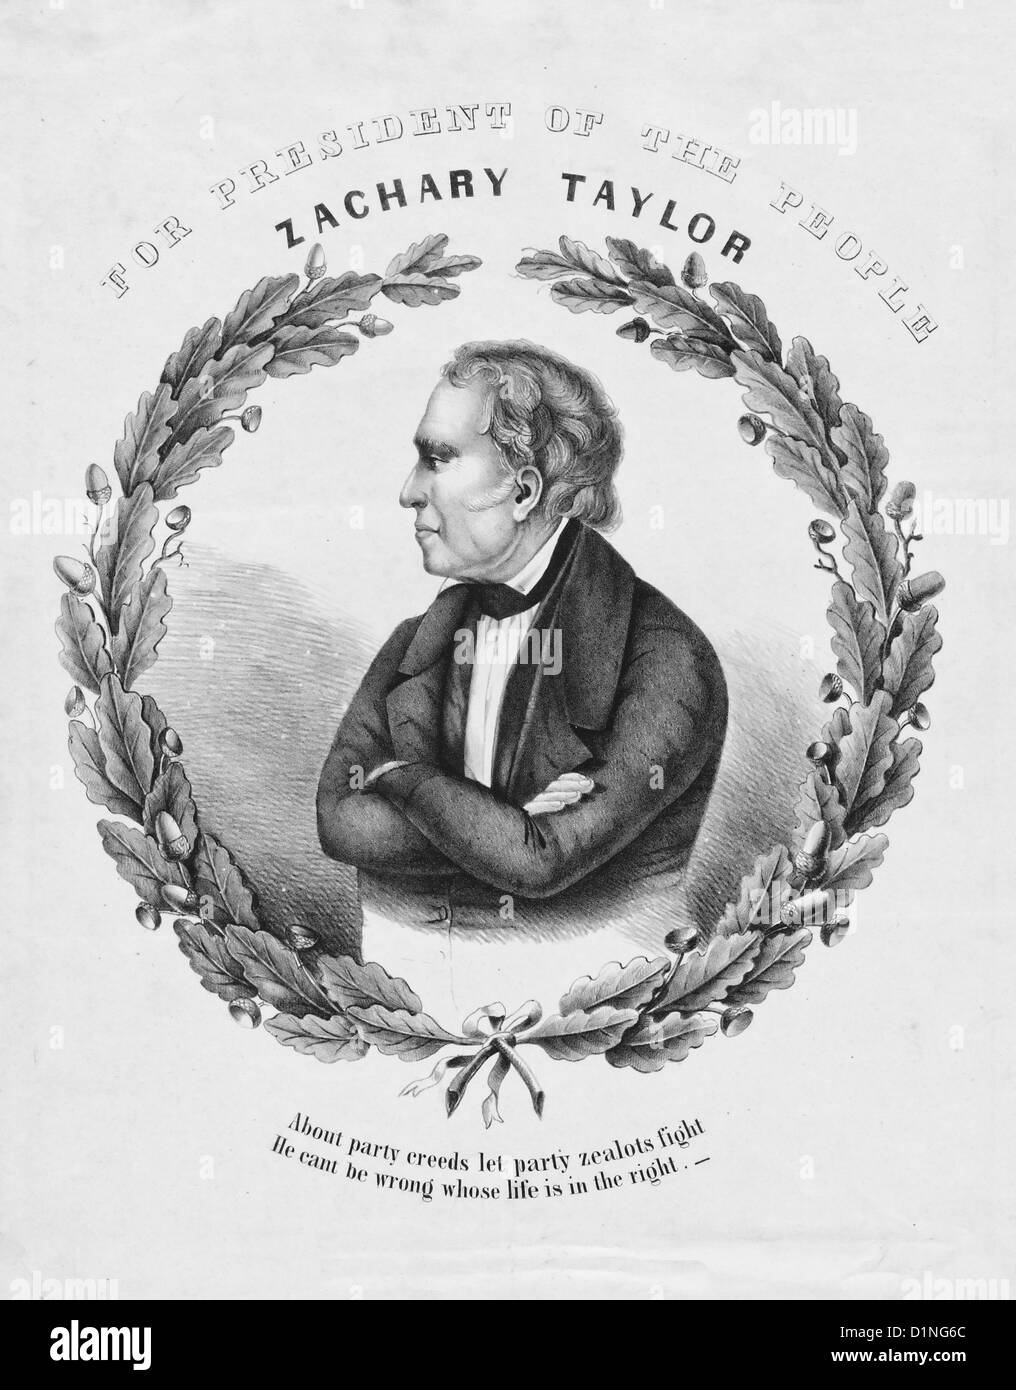 Zachary Taylor - für Präsident des Volkes - Wahlplakat für USA Präsidentschaftswahl 1848 Stockfoto